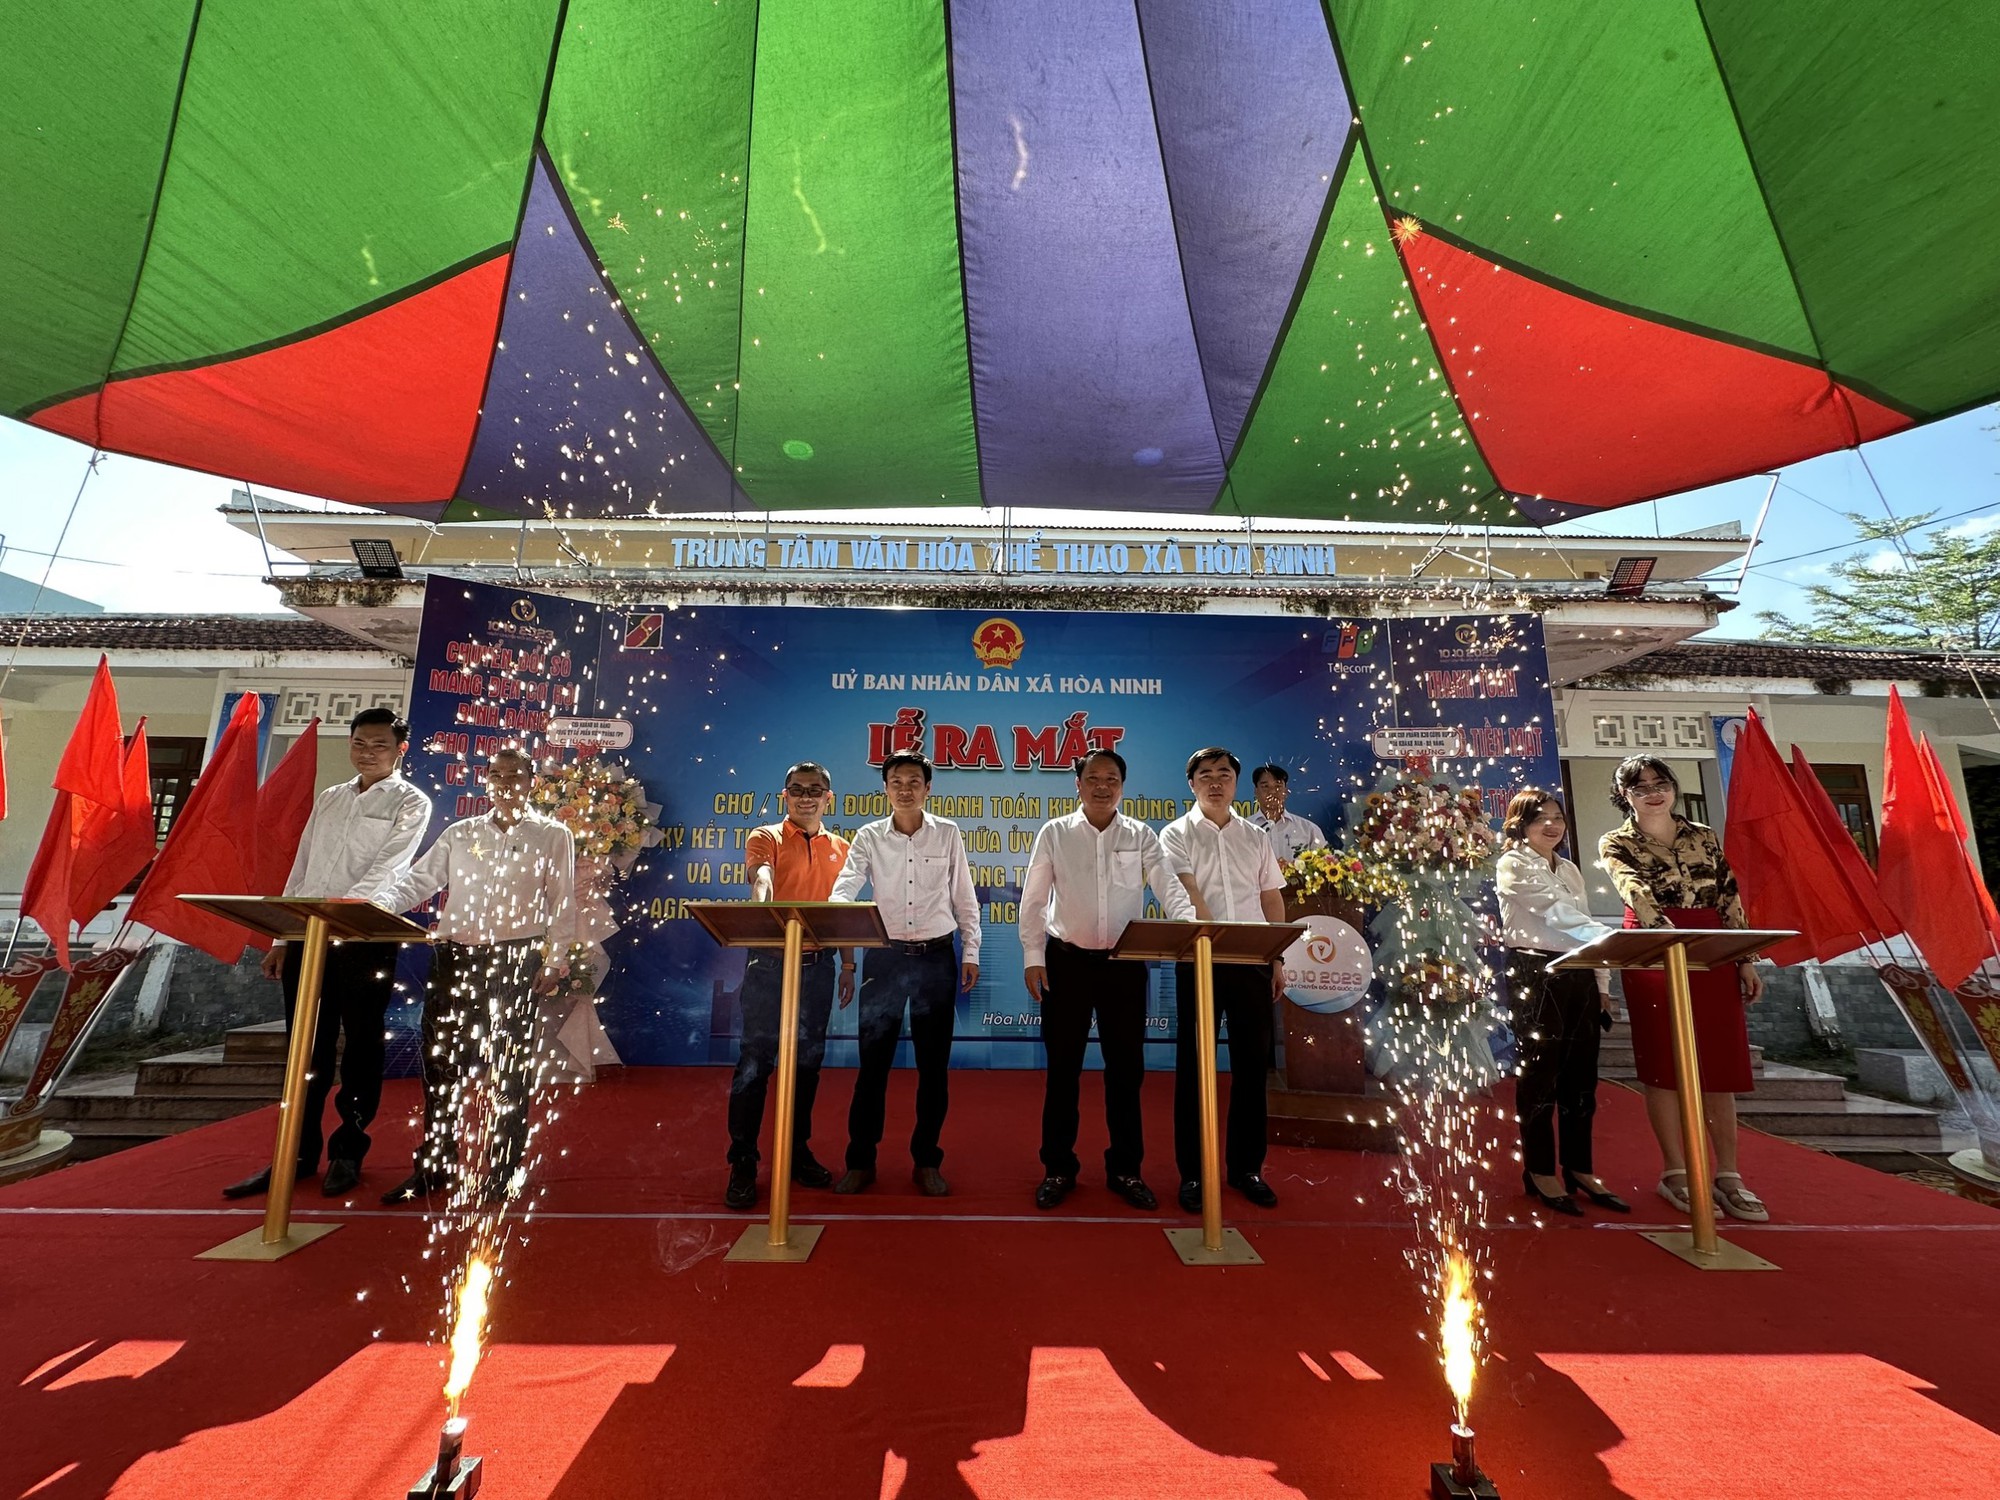 Agribank Chi nhánh KCN Hòa Khánh Nam Đà Nẵng ra mắt chợ, tuyến đường thanh toán không dùng tiền mặt - Ảnh 5.